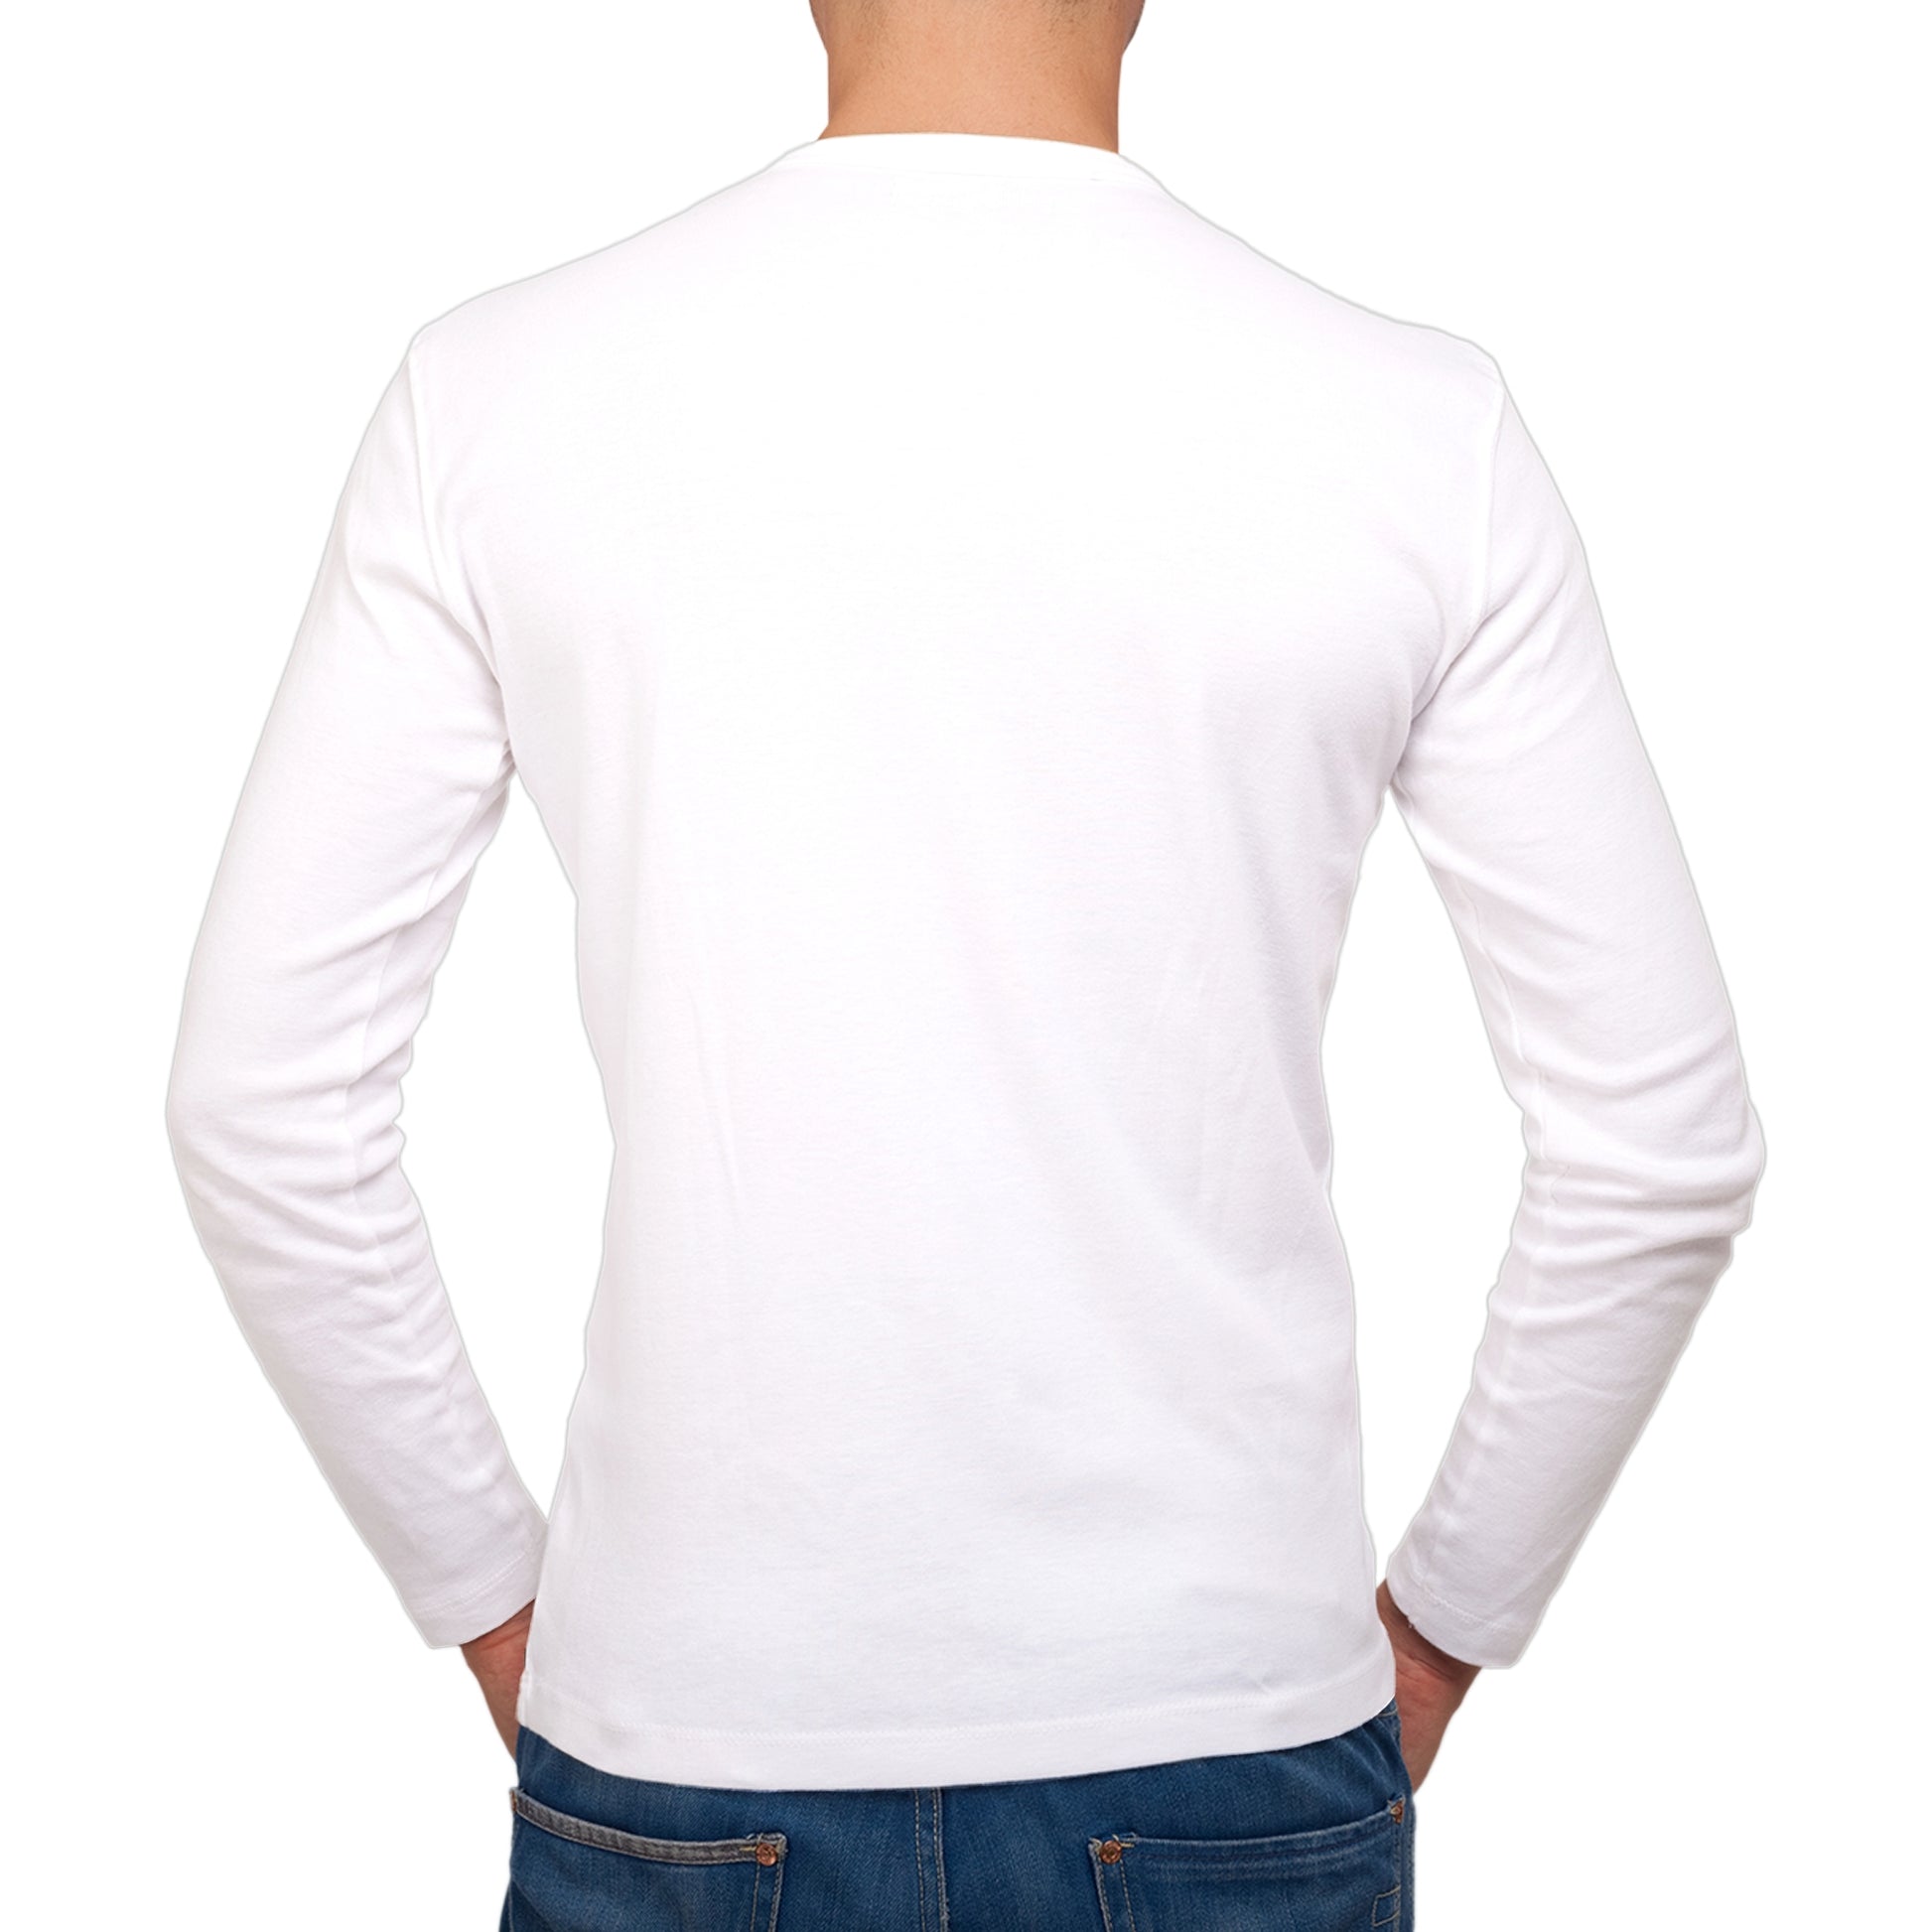 Full Sleeves White T-Shirt For Men - FlyingCart.pk